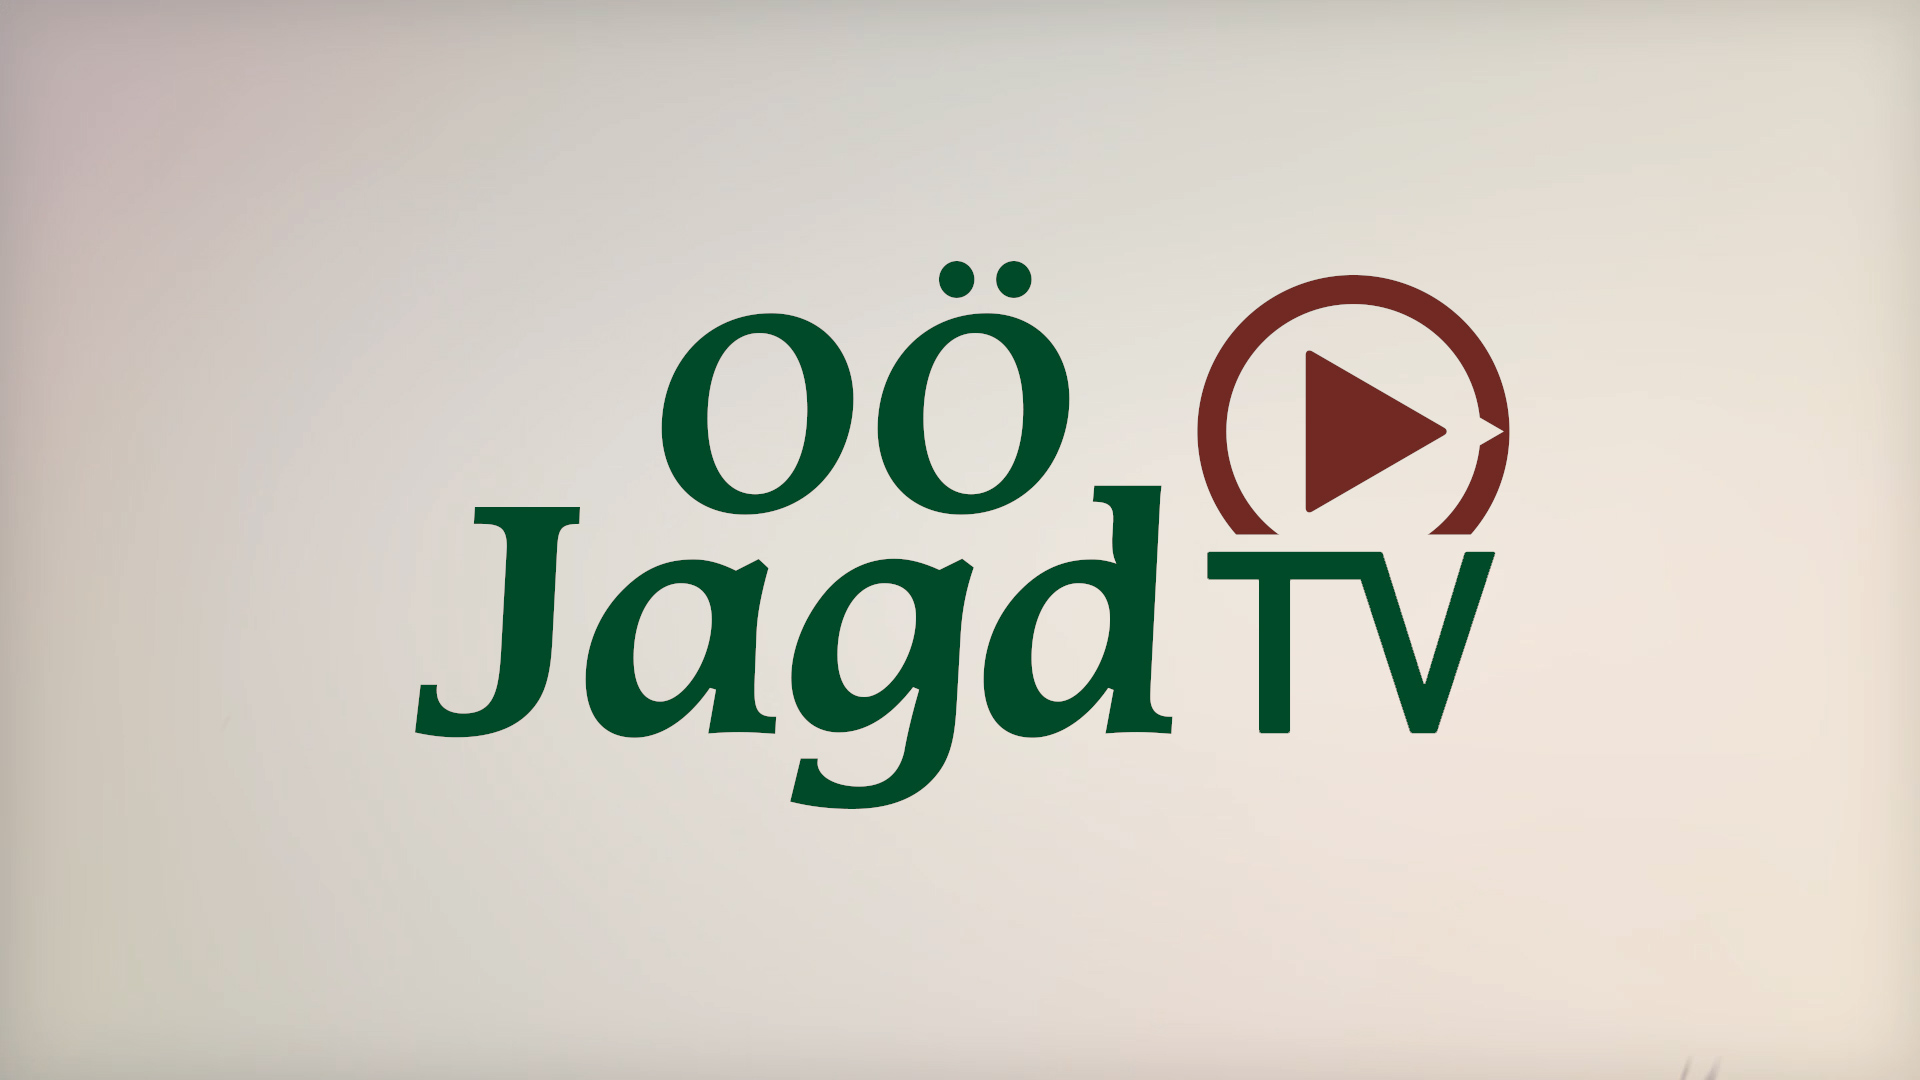 OÖ Jagd TV-Logo